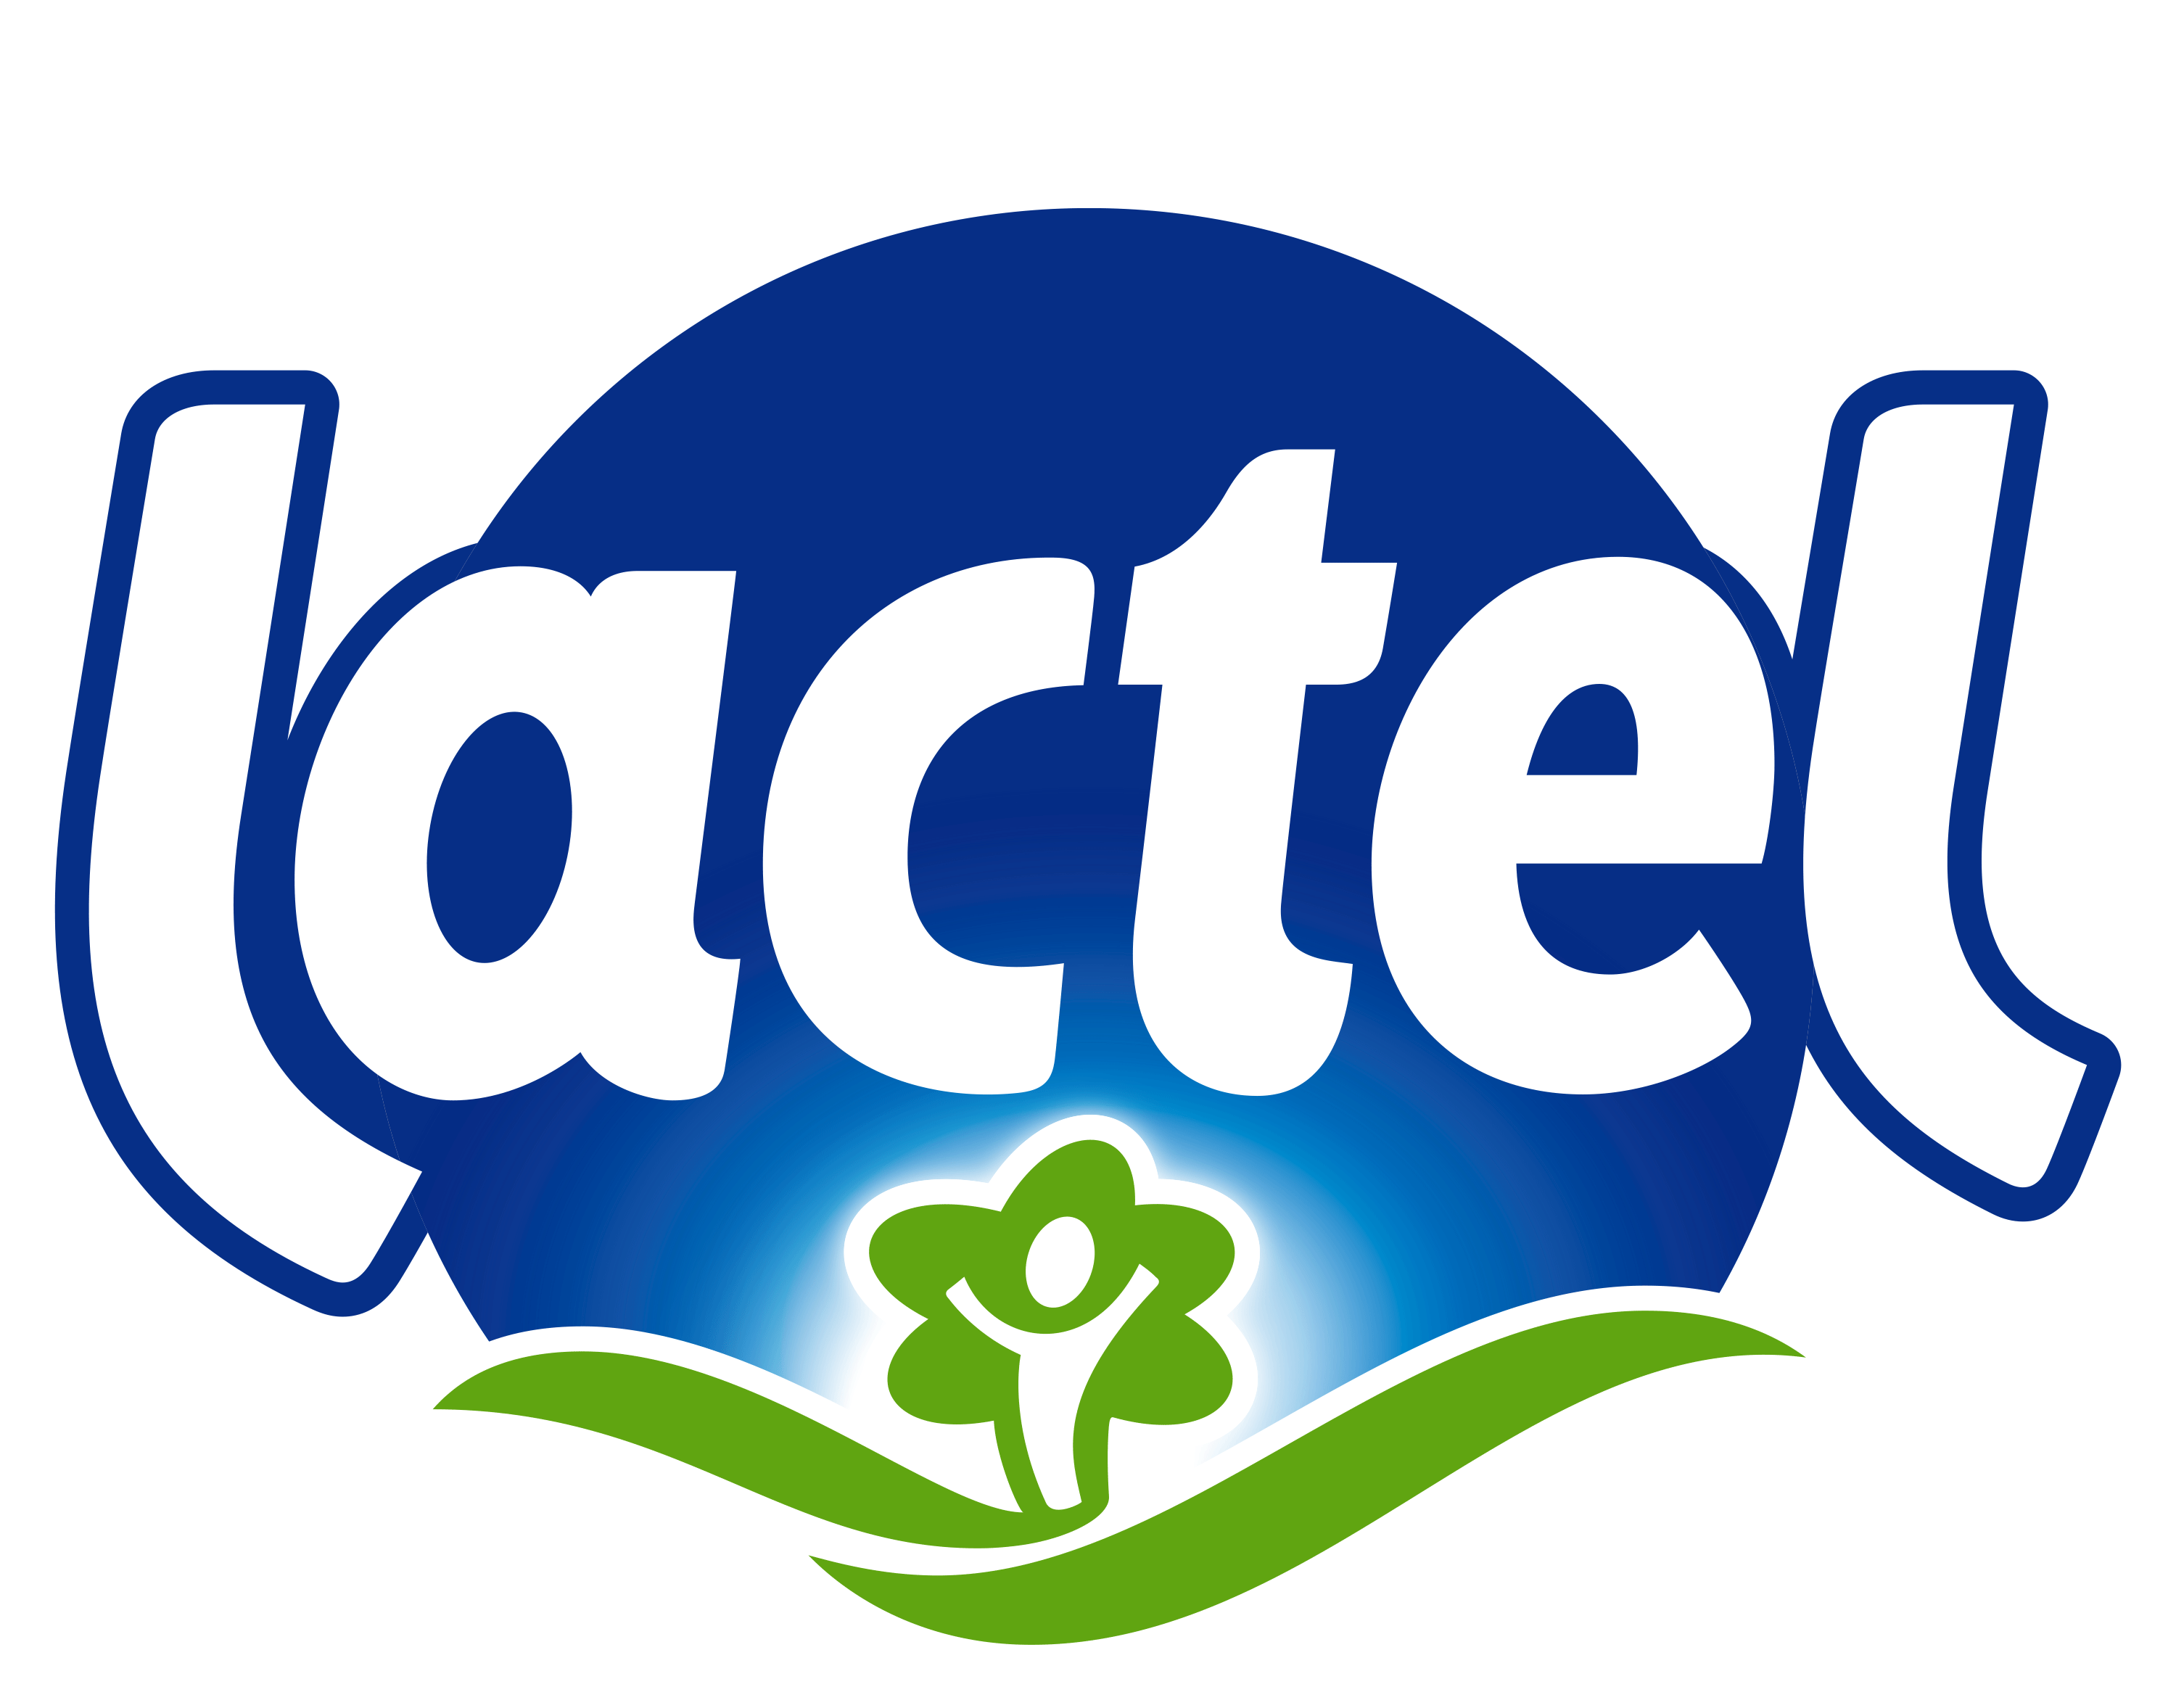 Lait Bio écrémé Matin Léger Sans lactose - Lactel - 1L - Drive Z